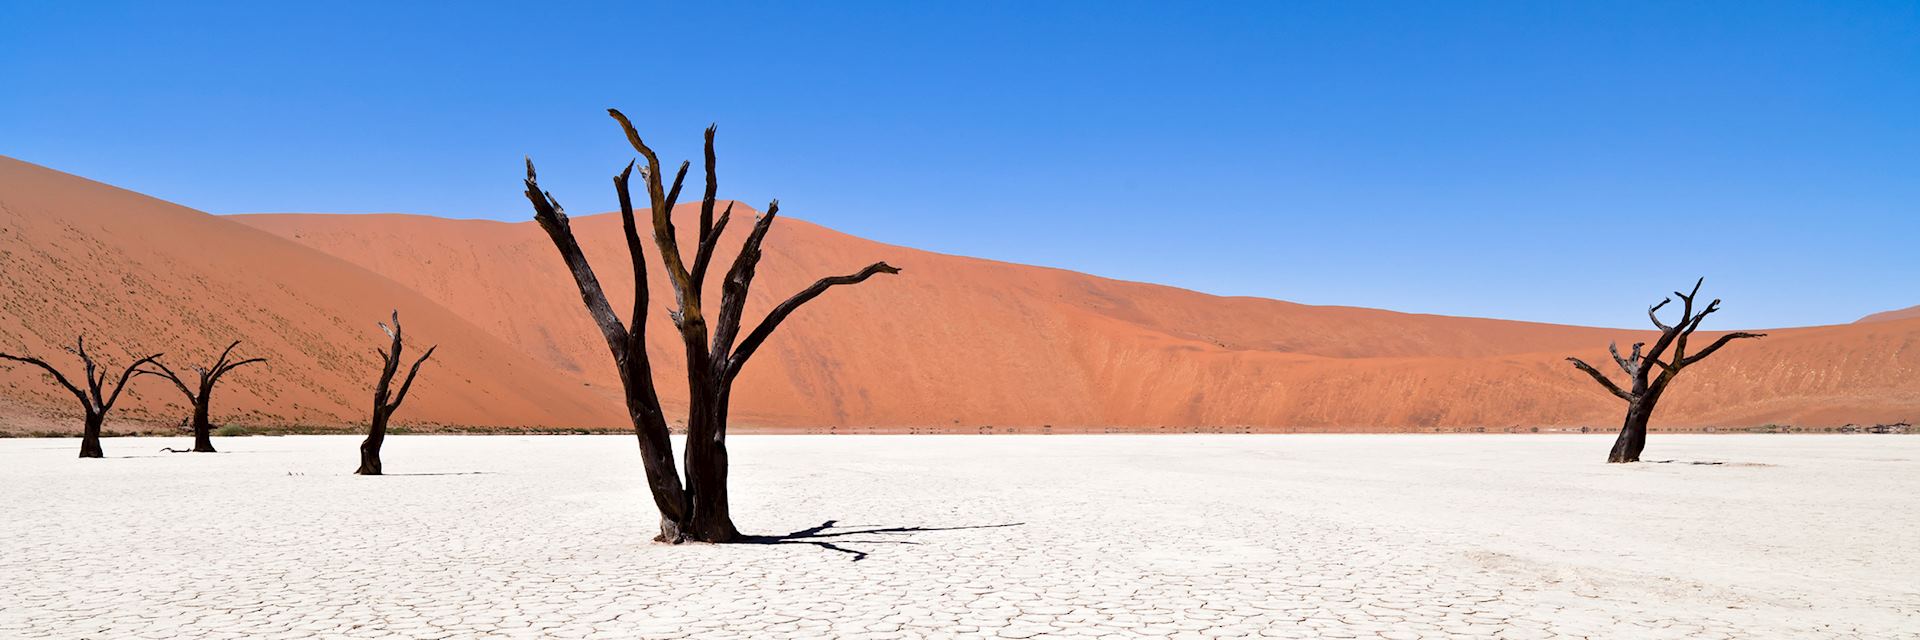 Deadvlei, Namibian desert